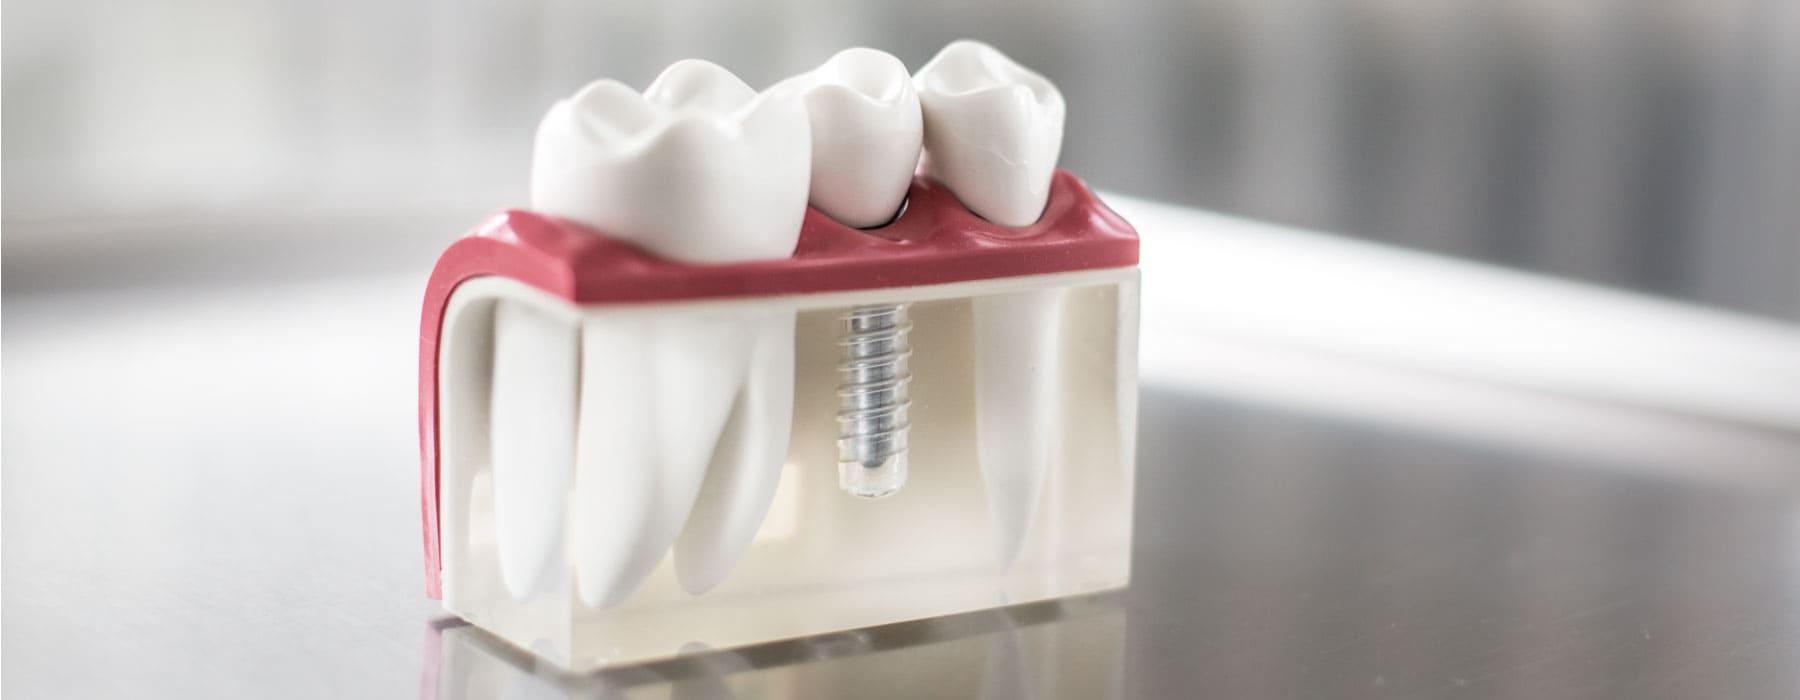 Modell Zahnimplantat aus der Implantologie Brühl